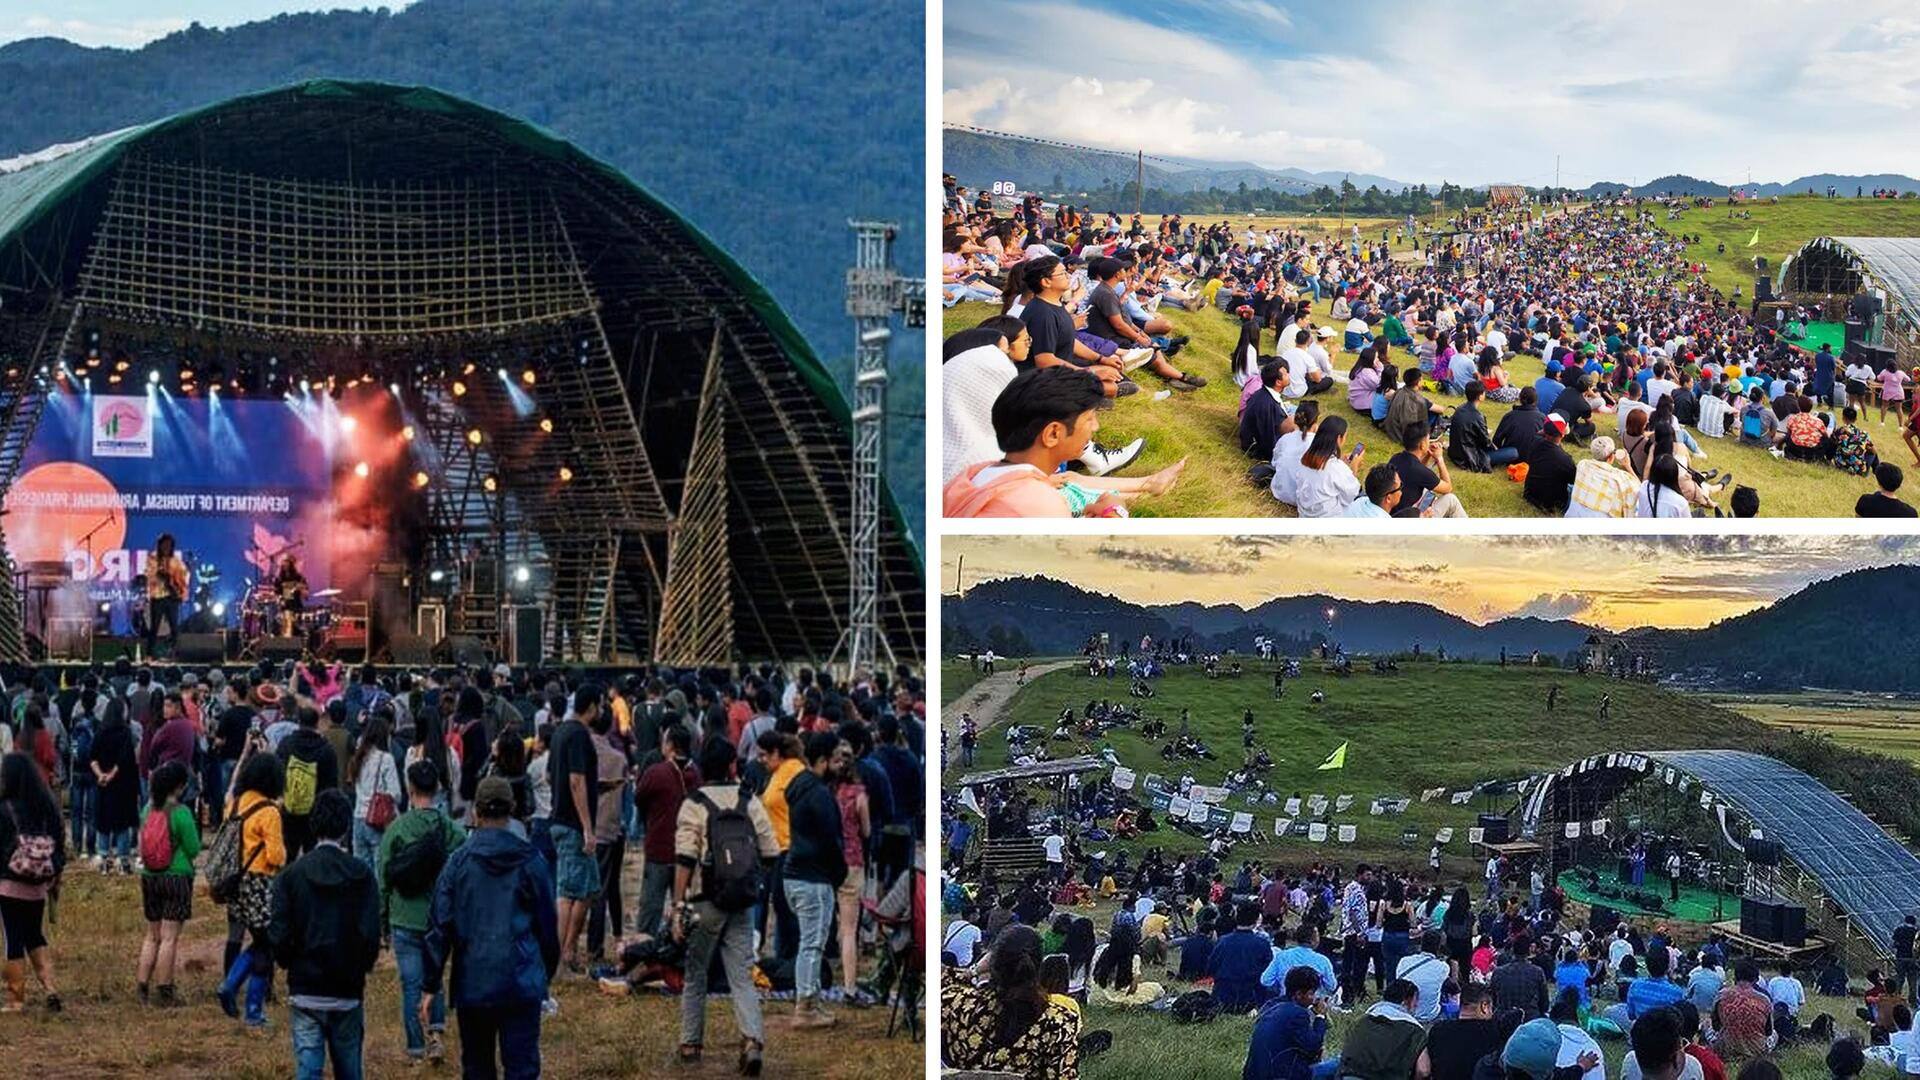 अरुणाचल प्रदेश में होने जा रहा है 'जीरो म्यूजिक फेस्टिवल', जानिए इस समारोह के बारे में 